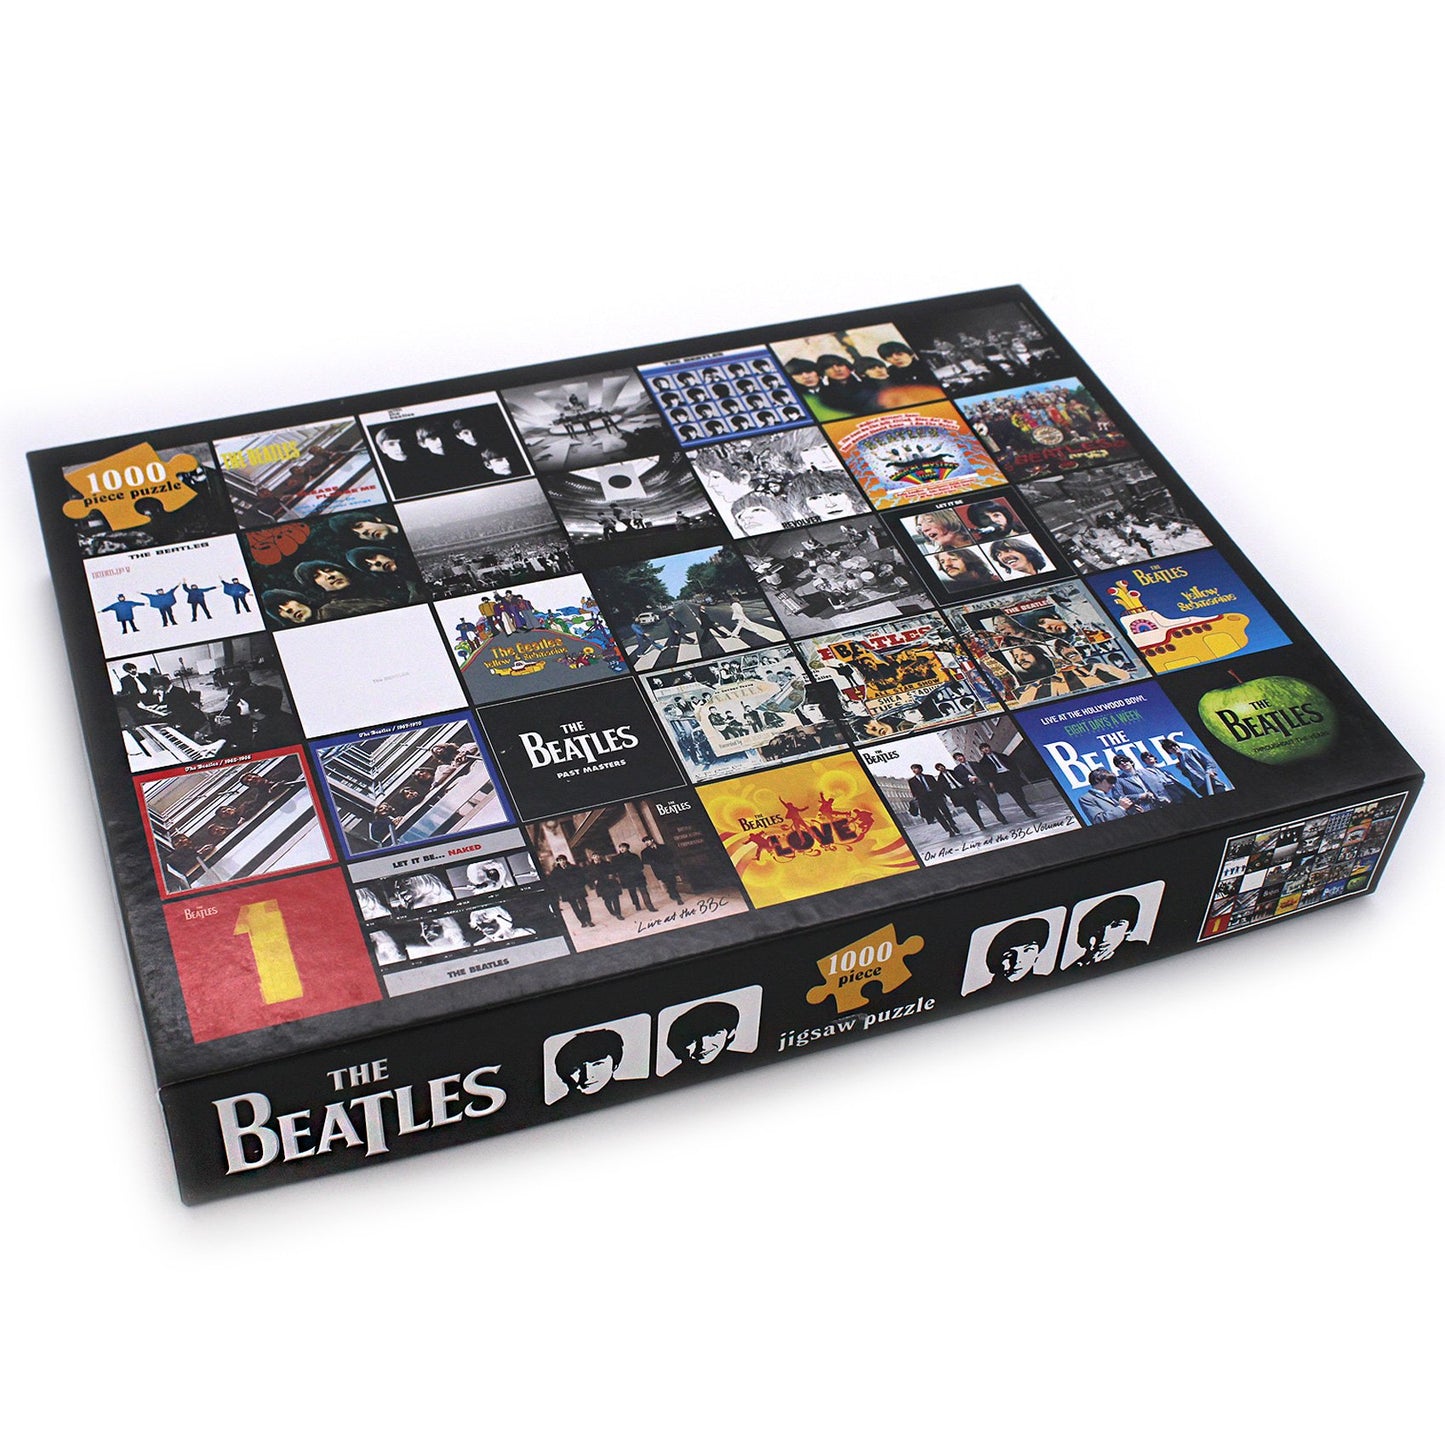 The Beatles - Albumhoezen, puzzel van 1000 stukjes